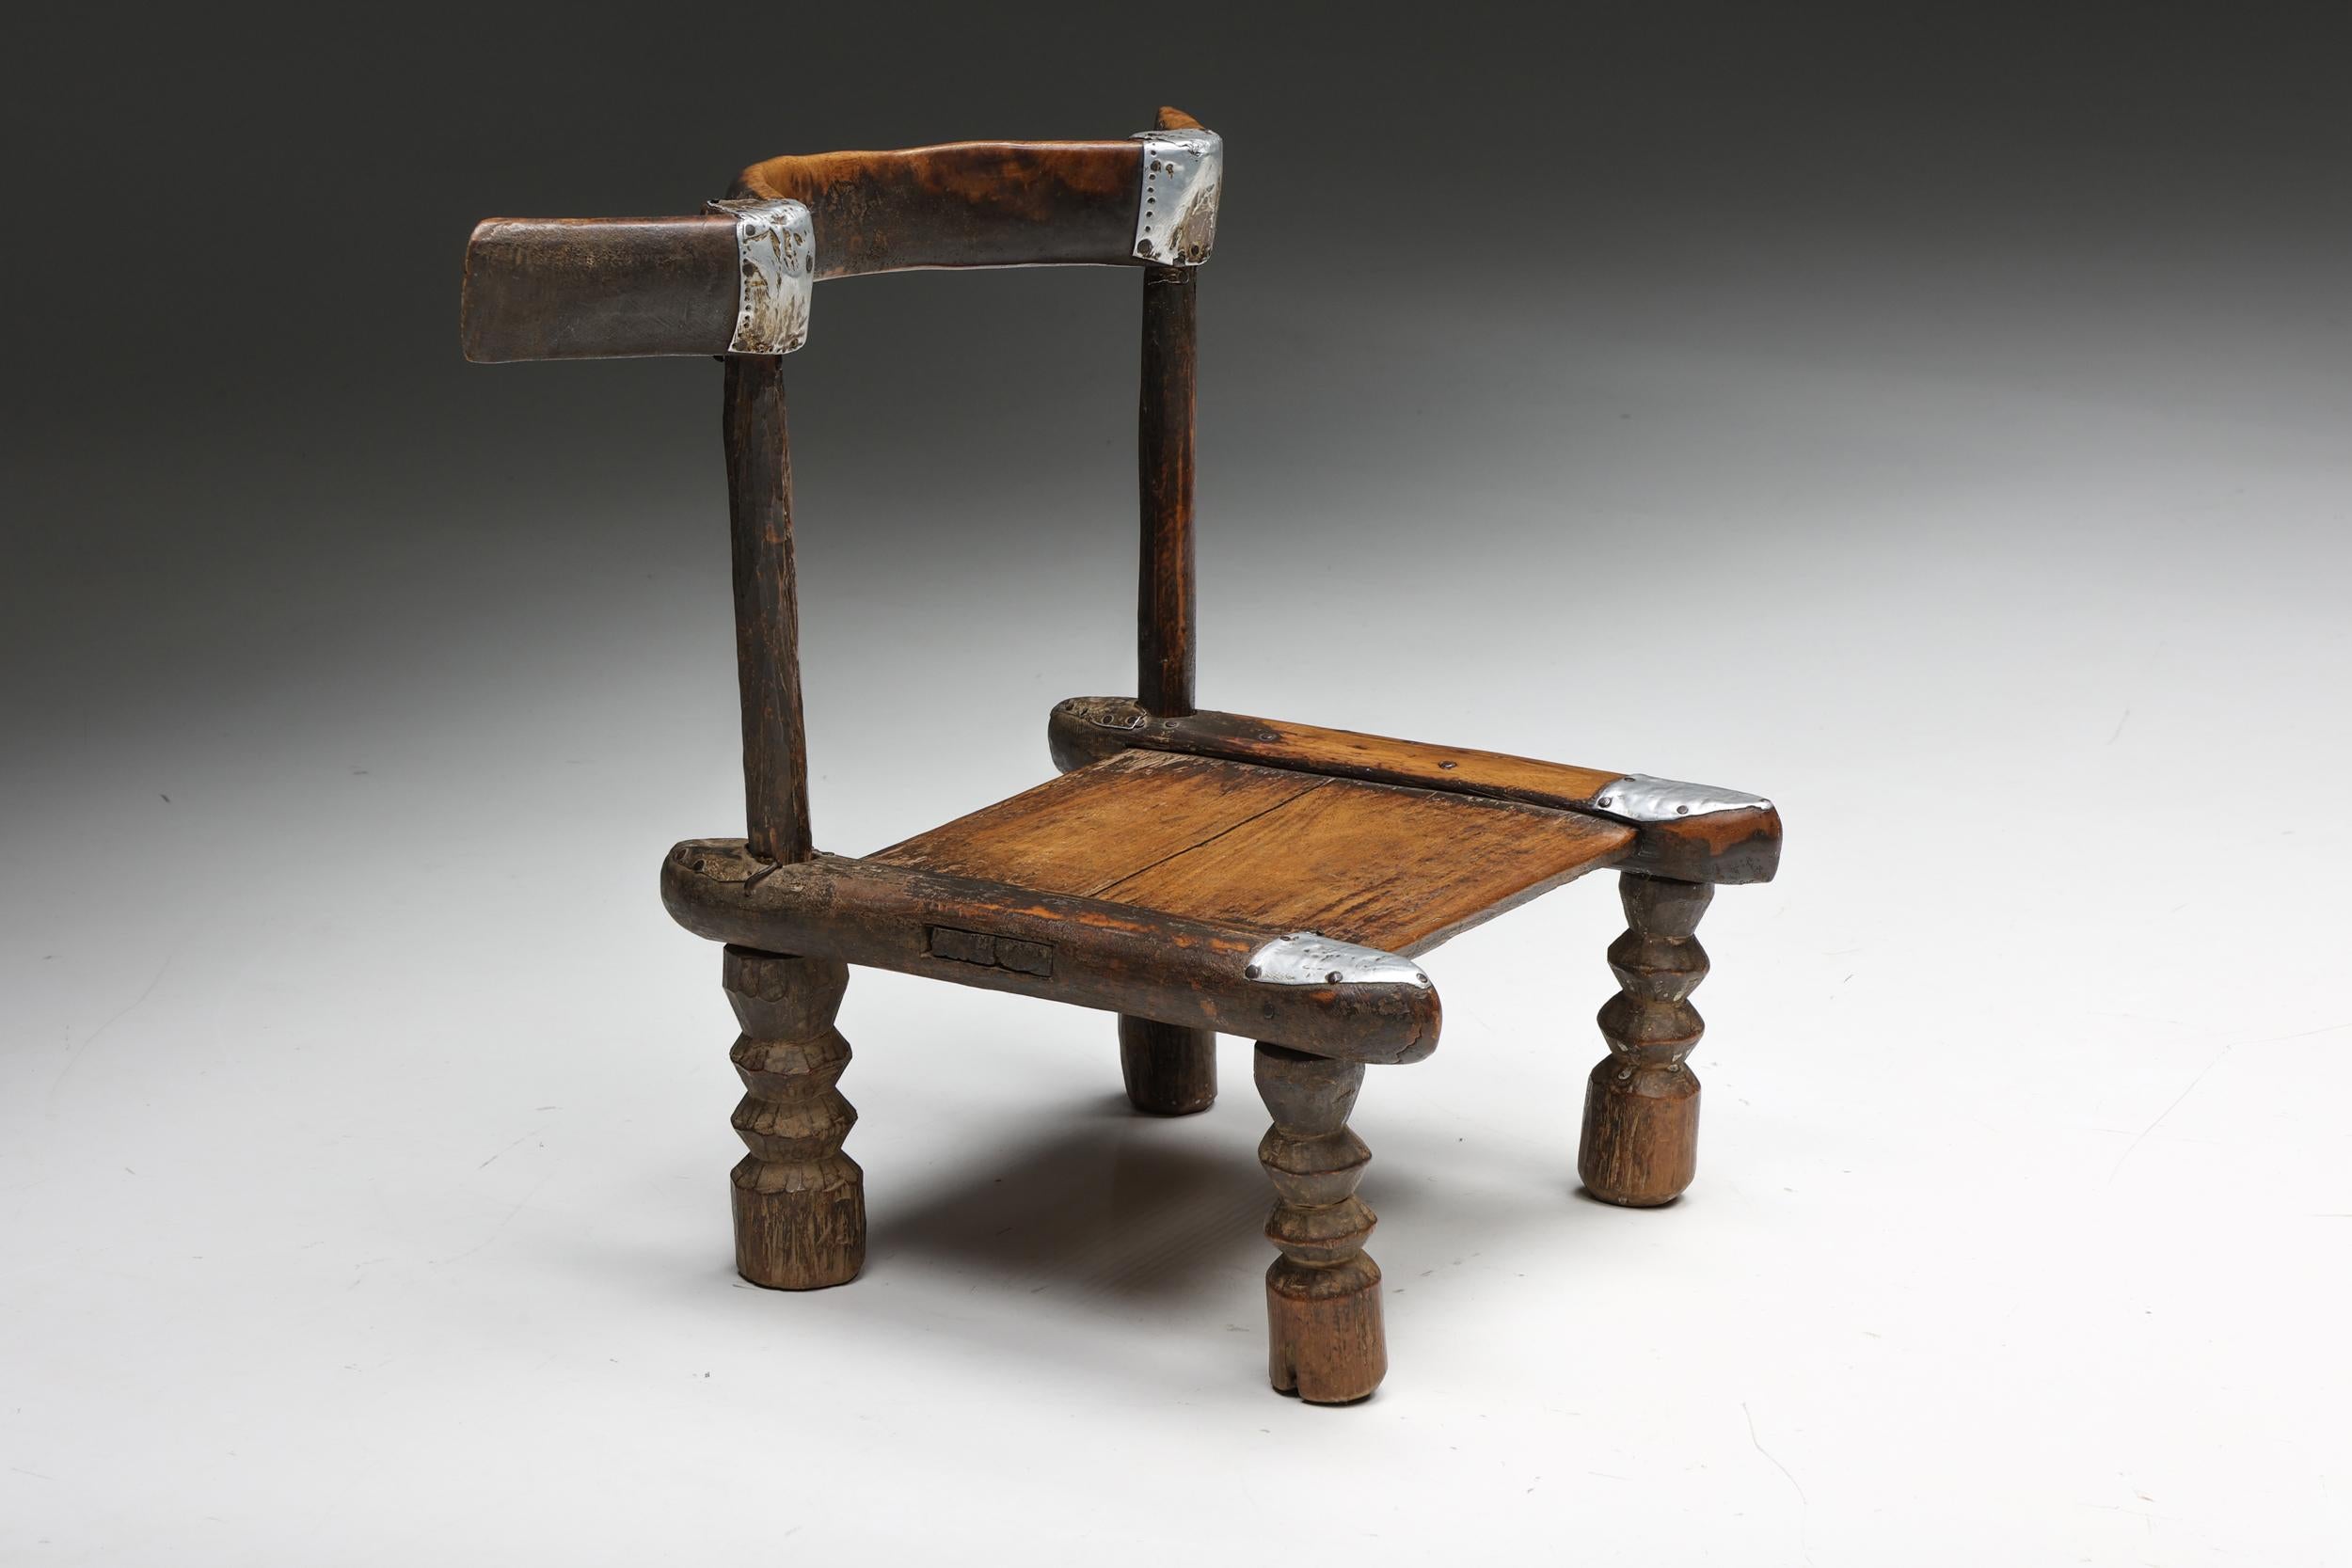 Französischer rustikaler Volkskunst-Holzstuhl, der die Essenz der Wabi-Sabi-Philosophie verkörpert. Dieses mit akribischer Kunstfertigkeit gefertigte Stück ist ein einzigartiger Ausdruck organischer Schönheit, der sich durch eine bemerkenswerte